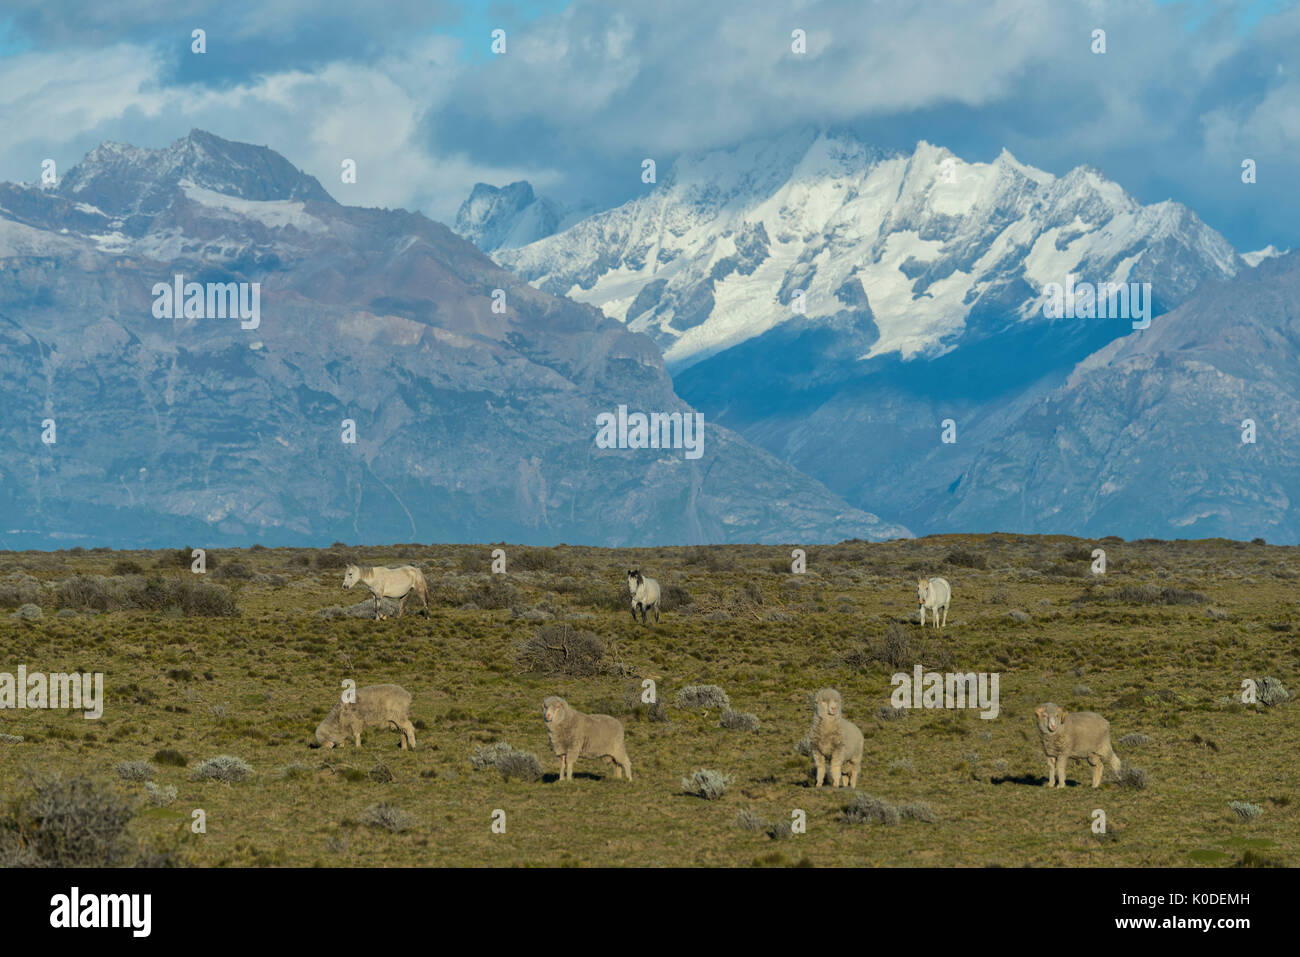 América del Sur, Argentina, Patagonia, los Andes y los caballos Foto de stock